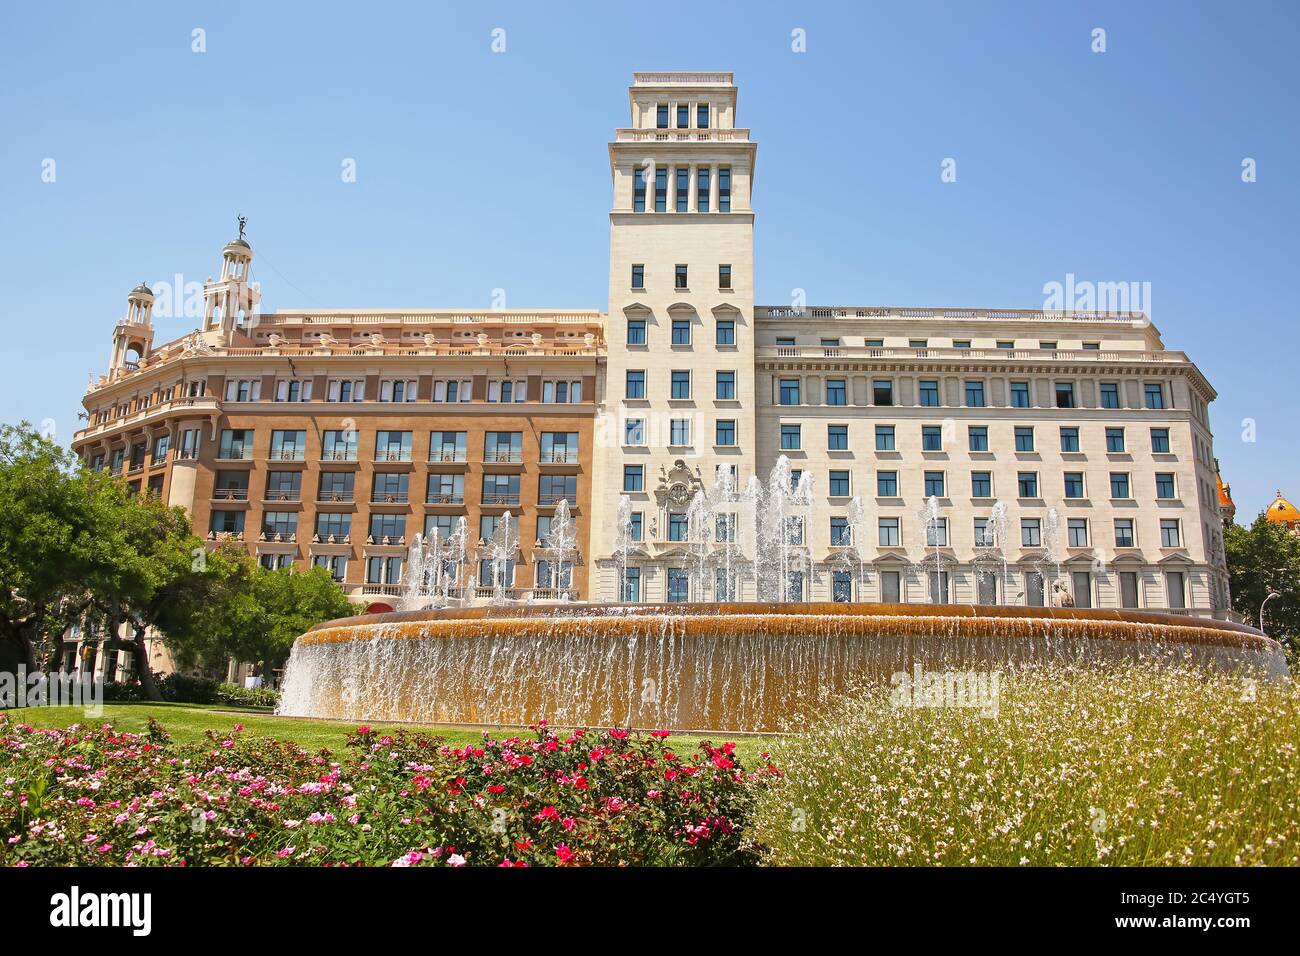 Wunderschöner Brunnen und Gärten im Zentrum der Stadt in der Innenstadt, Placa de Catalunya oder Catalonia Square, Barcelona, Spanien. Stockfoto